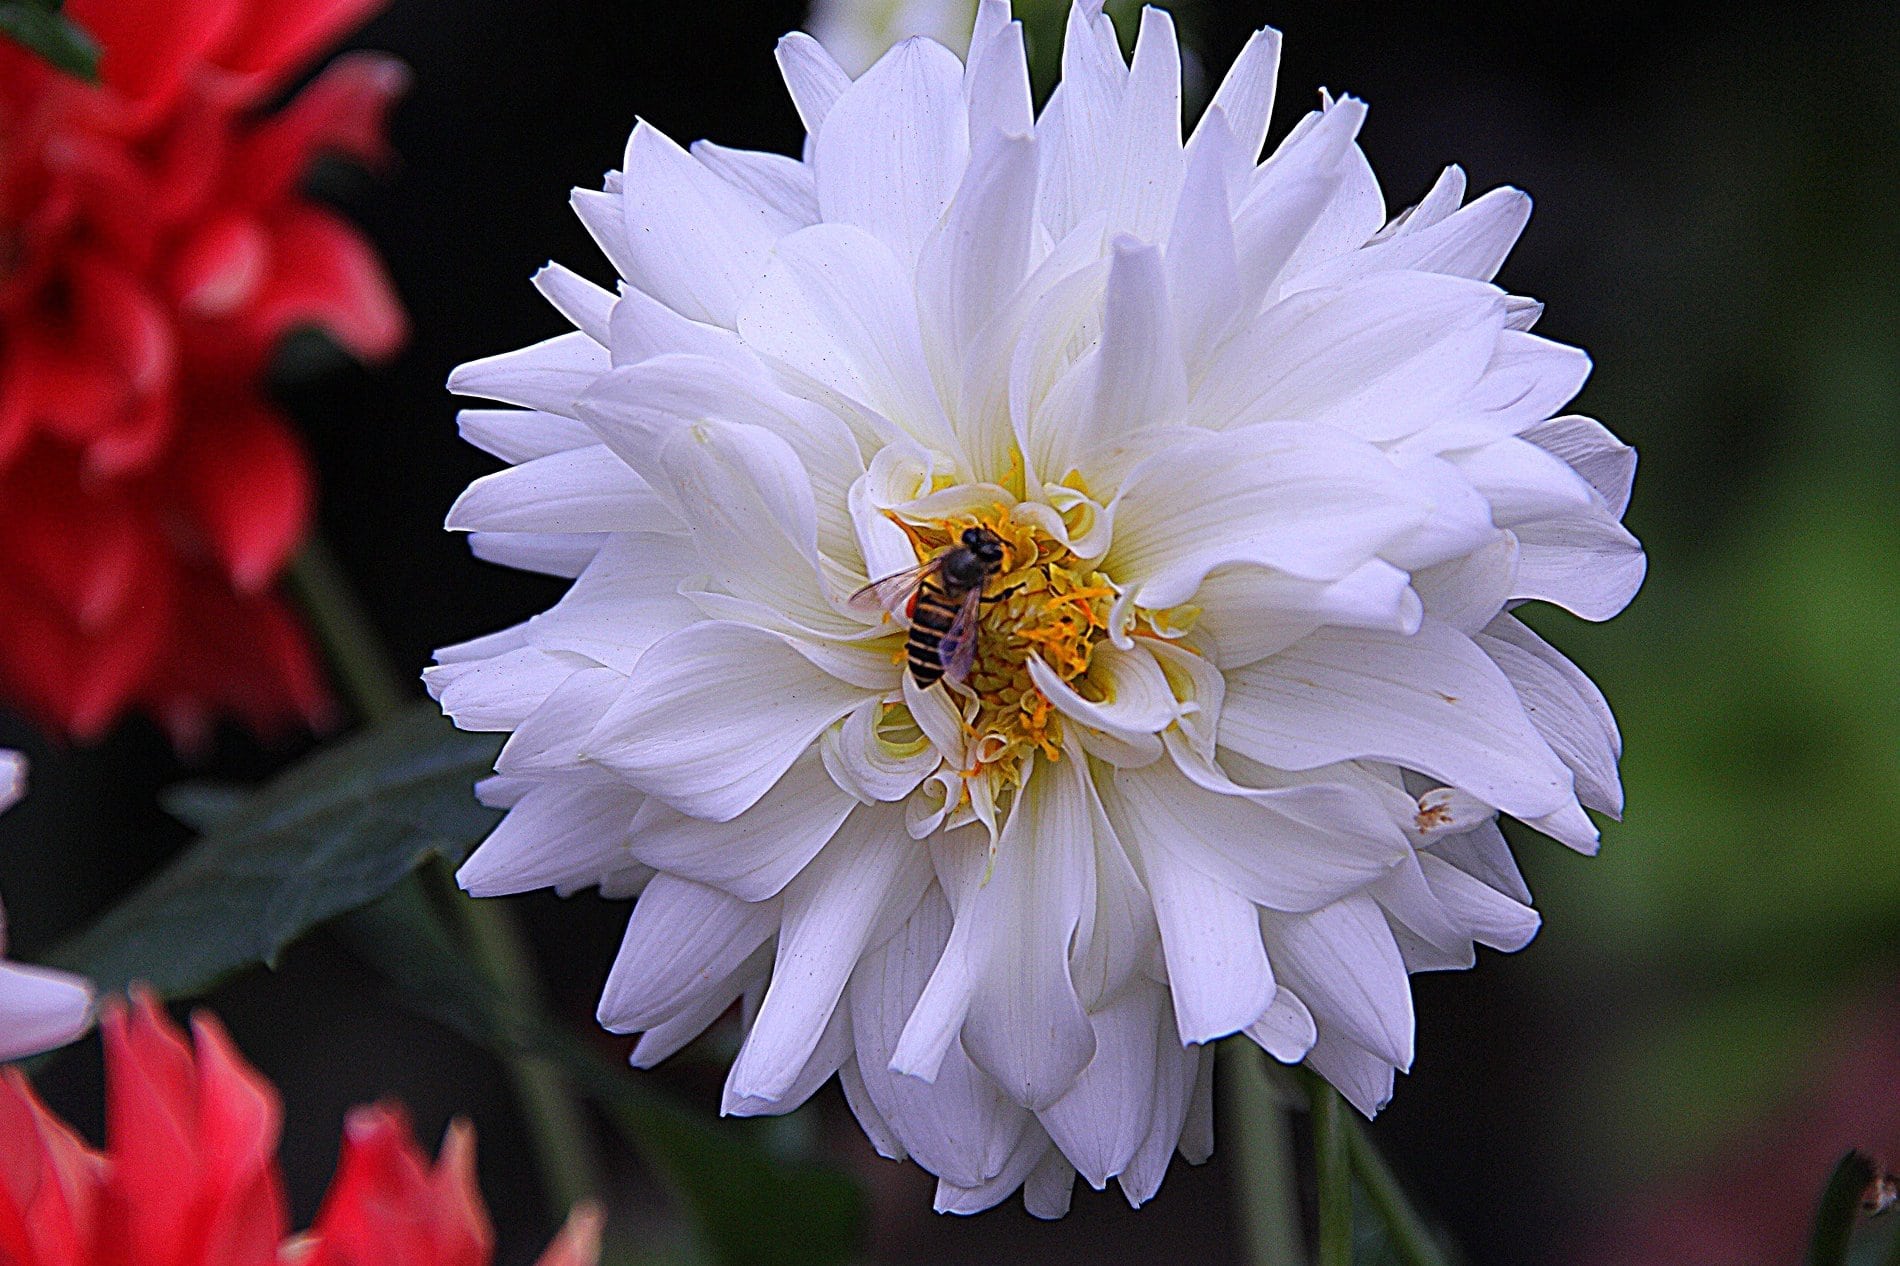 Image libre: fleur blanche, abeille, insecte, nature, jardin, pétale,  plante, fleur, pollen